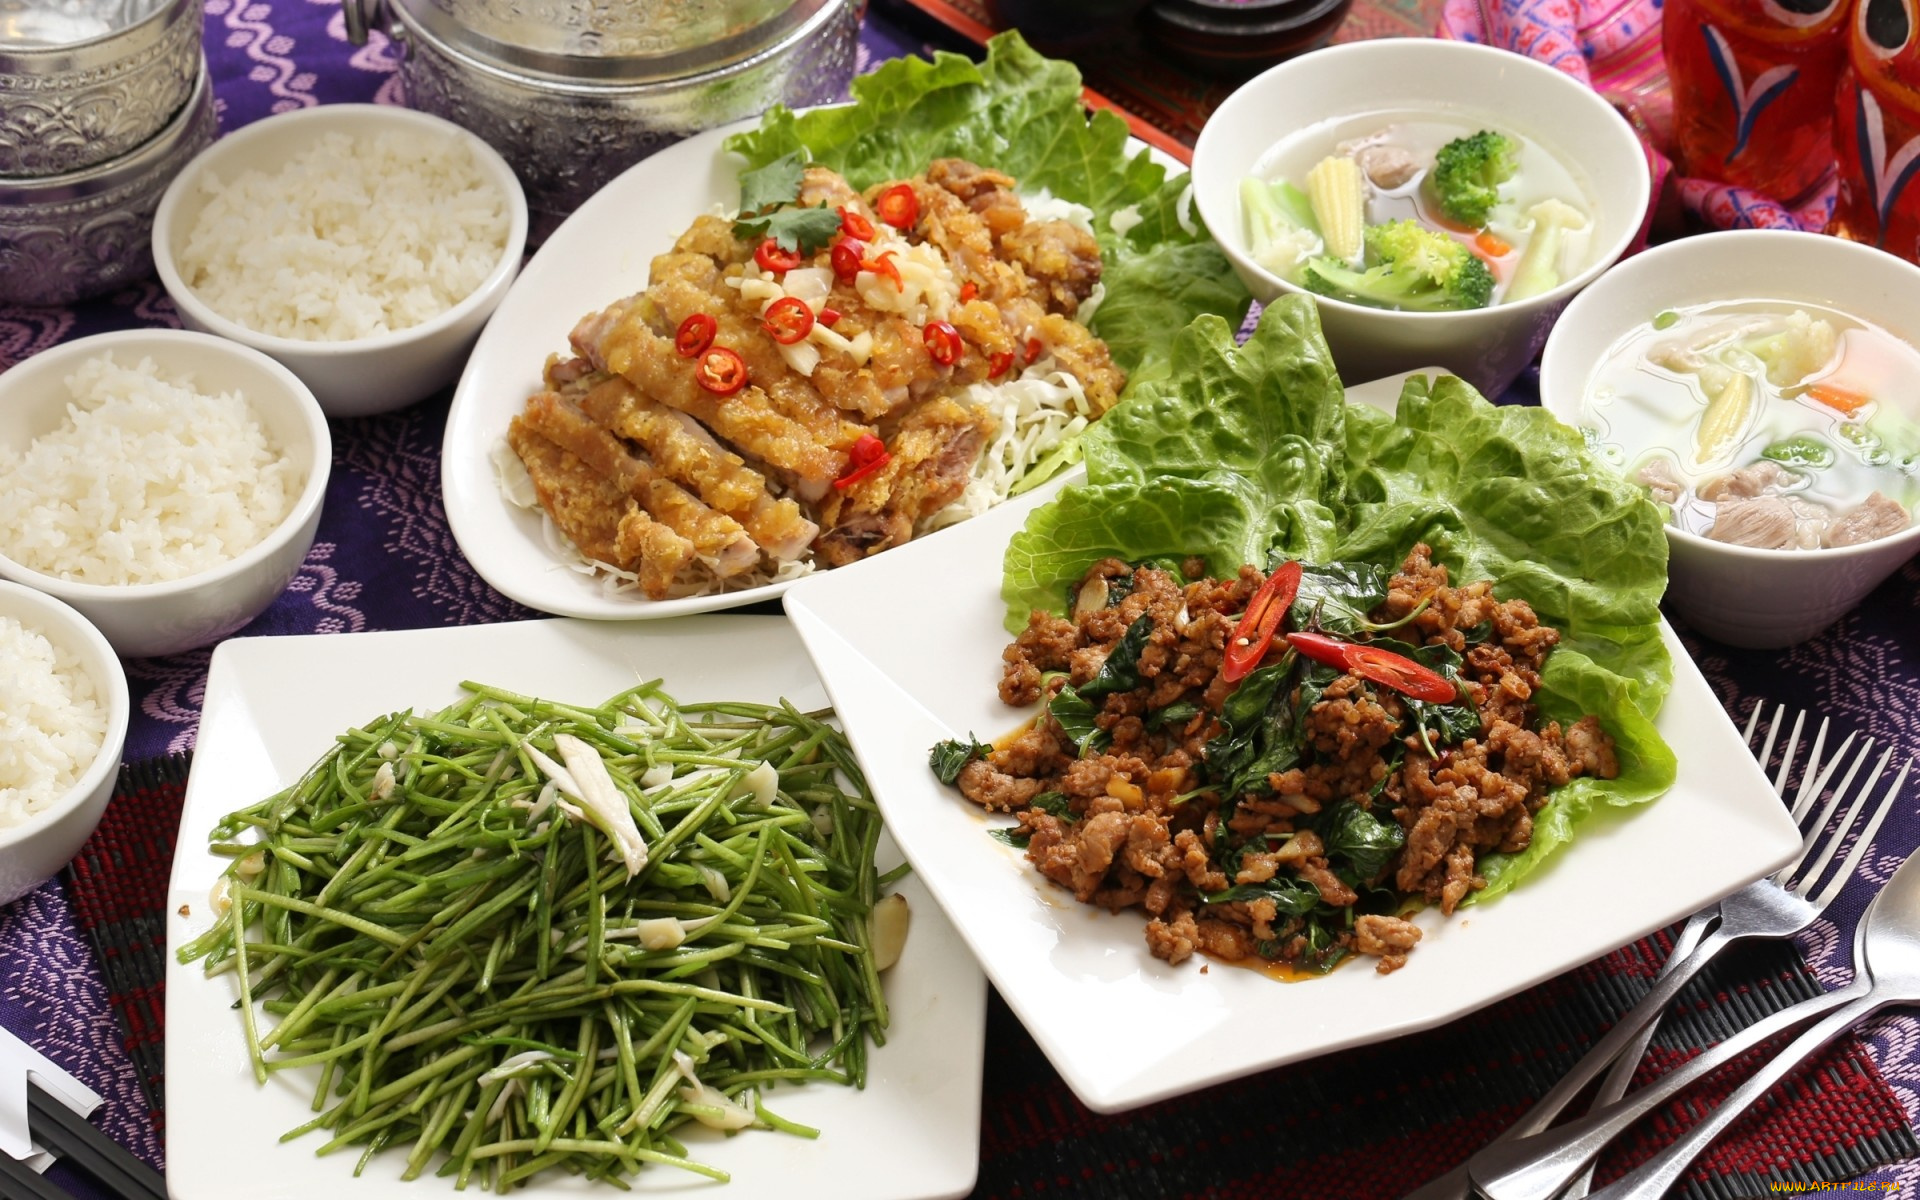 еда, разное, ассорти, блюда, тайваньская, кухня, мясо, салат, овощи, рис, суп